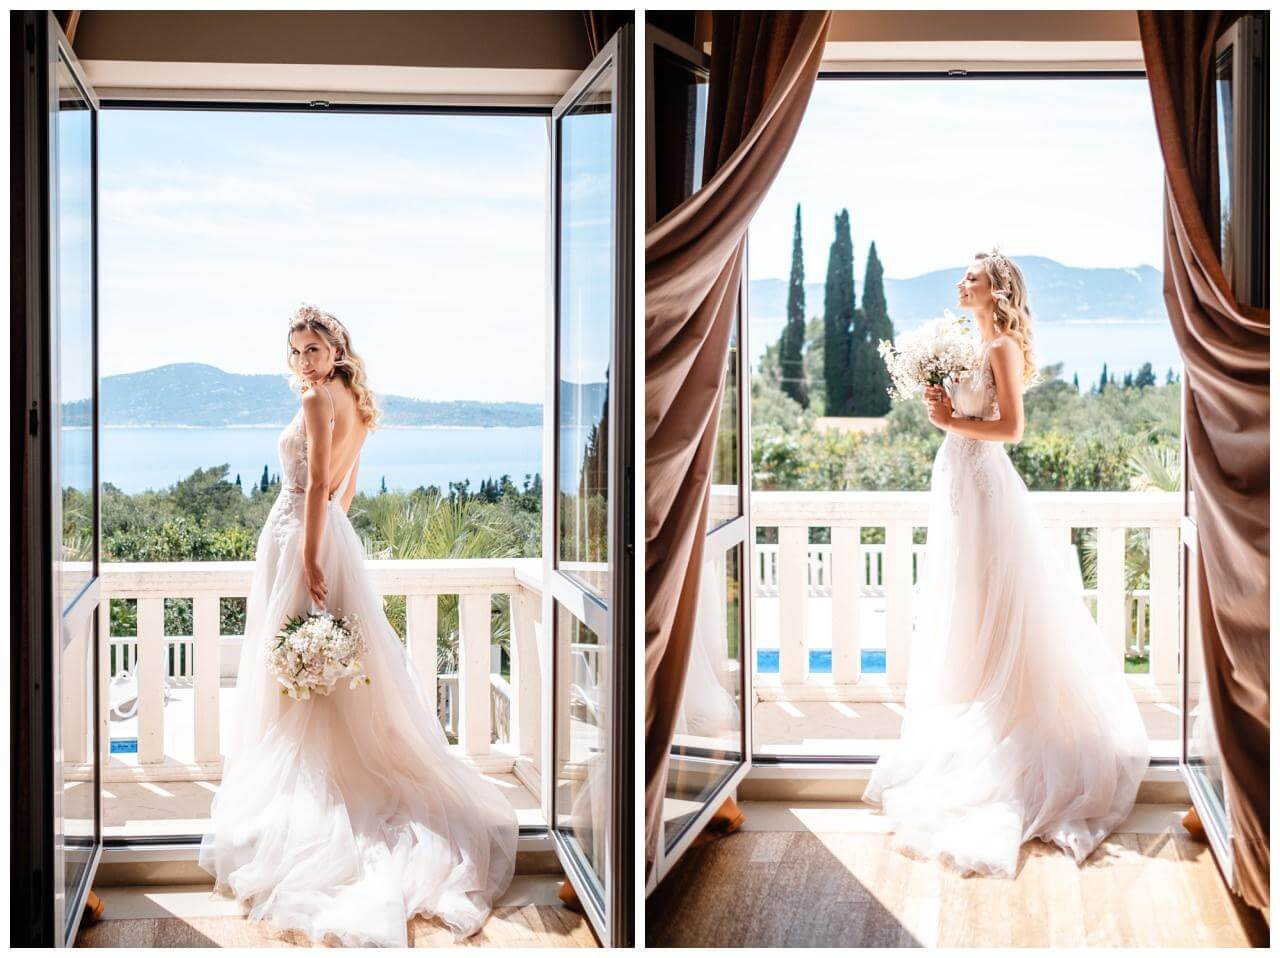 Braut mit Brautstrauß Schleierkraut auf Balkon in Villa in Kroatien Wedding Kroatien, wedding in croatia,hochzeitsplanerin kroatien, hochzeit in kroatien